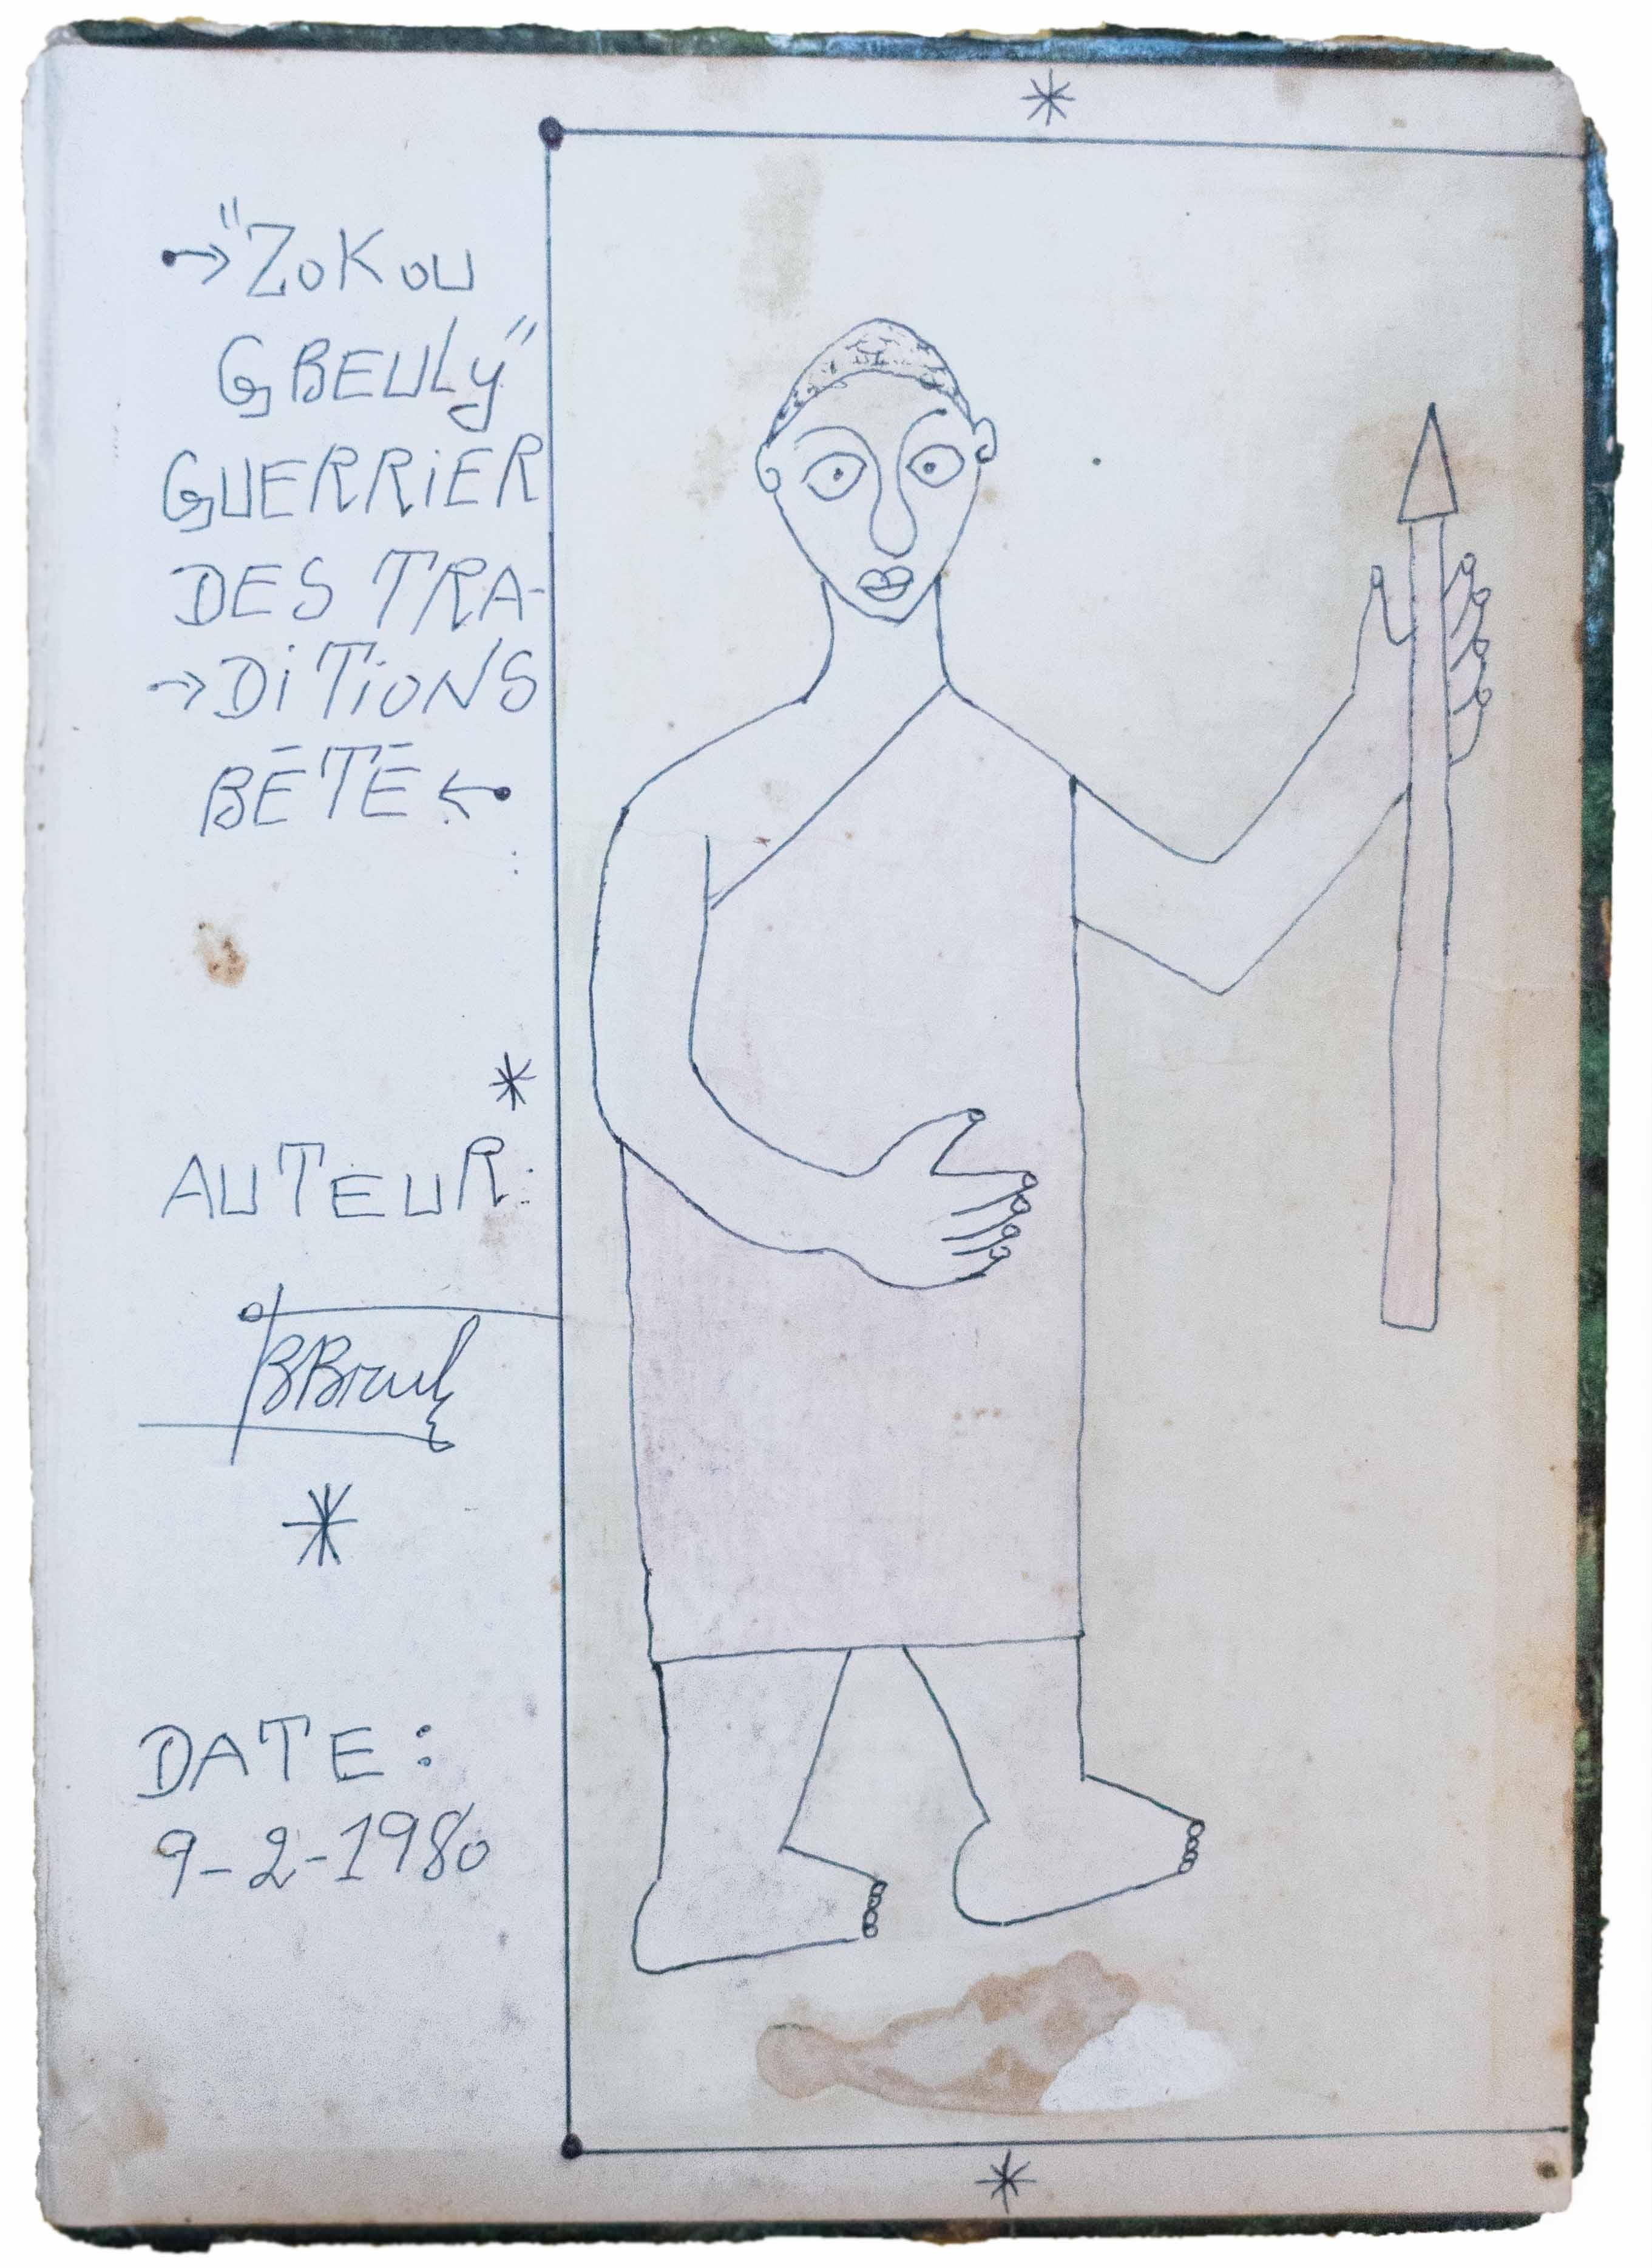 Frédéric Bruly Bouabré Figurative Art – Zokou Gbeuli guerrier des traditions Bété, 1980, Afrikanische Kunst, Zeichnung